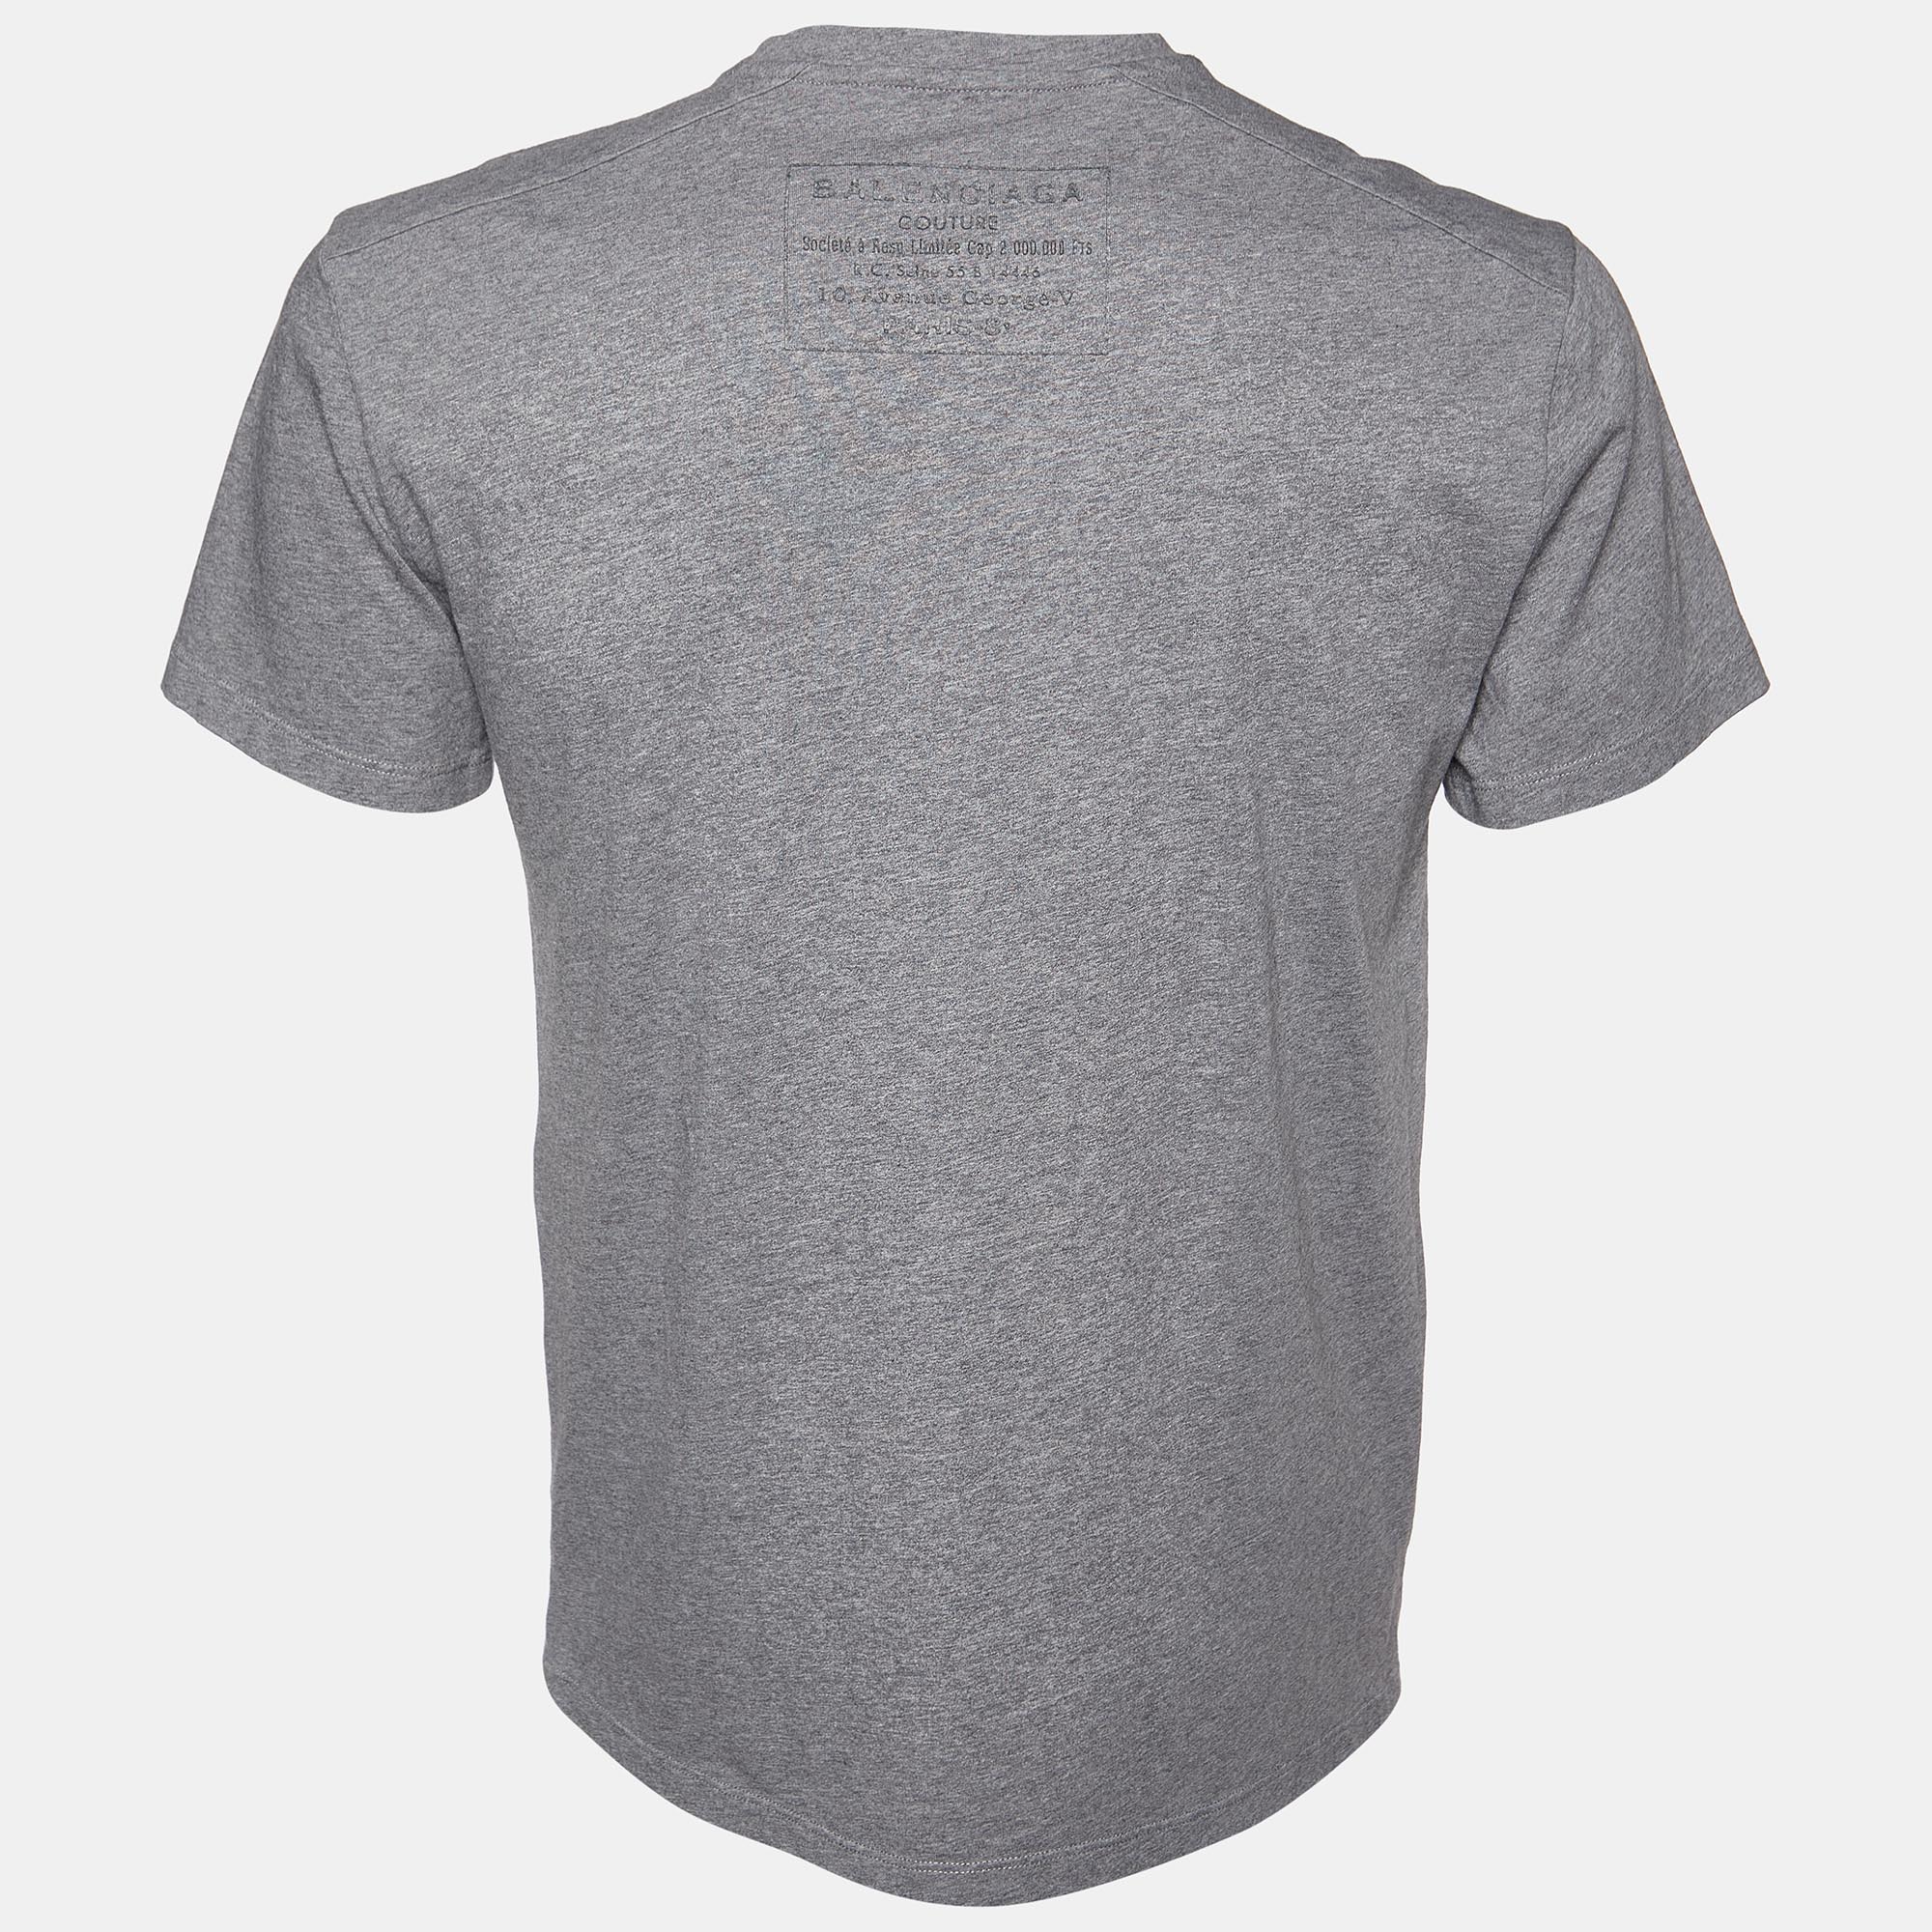 

Balenciaga Grey Logo Print Cotton Crew Neck T-Shirt